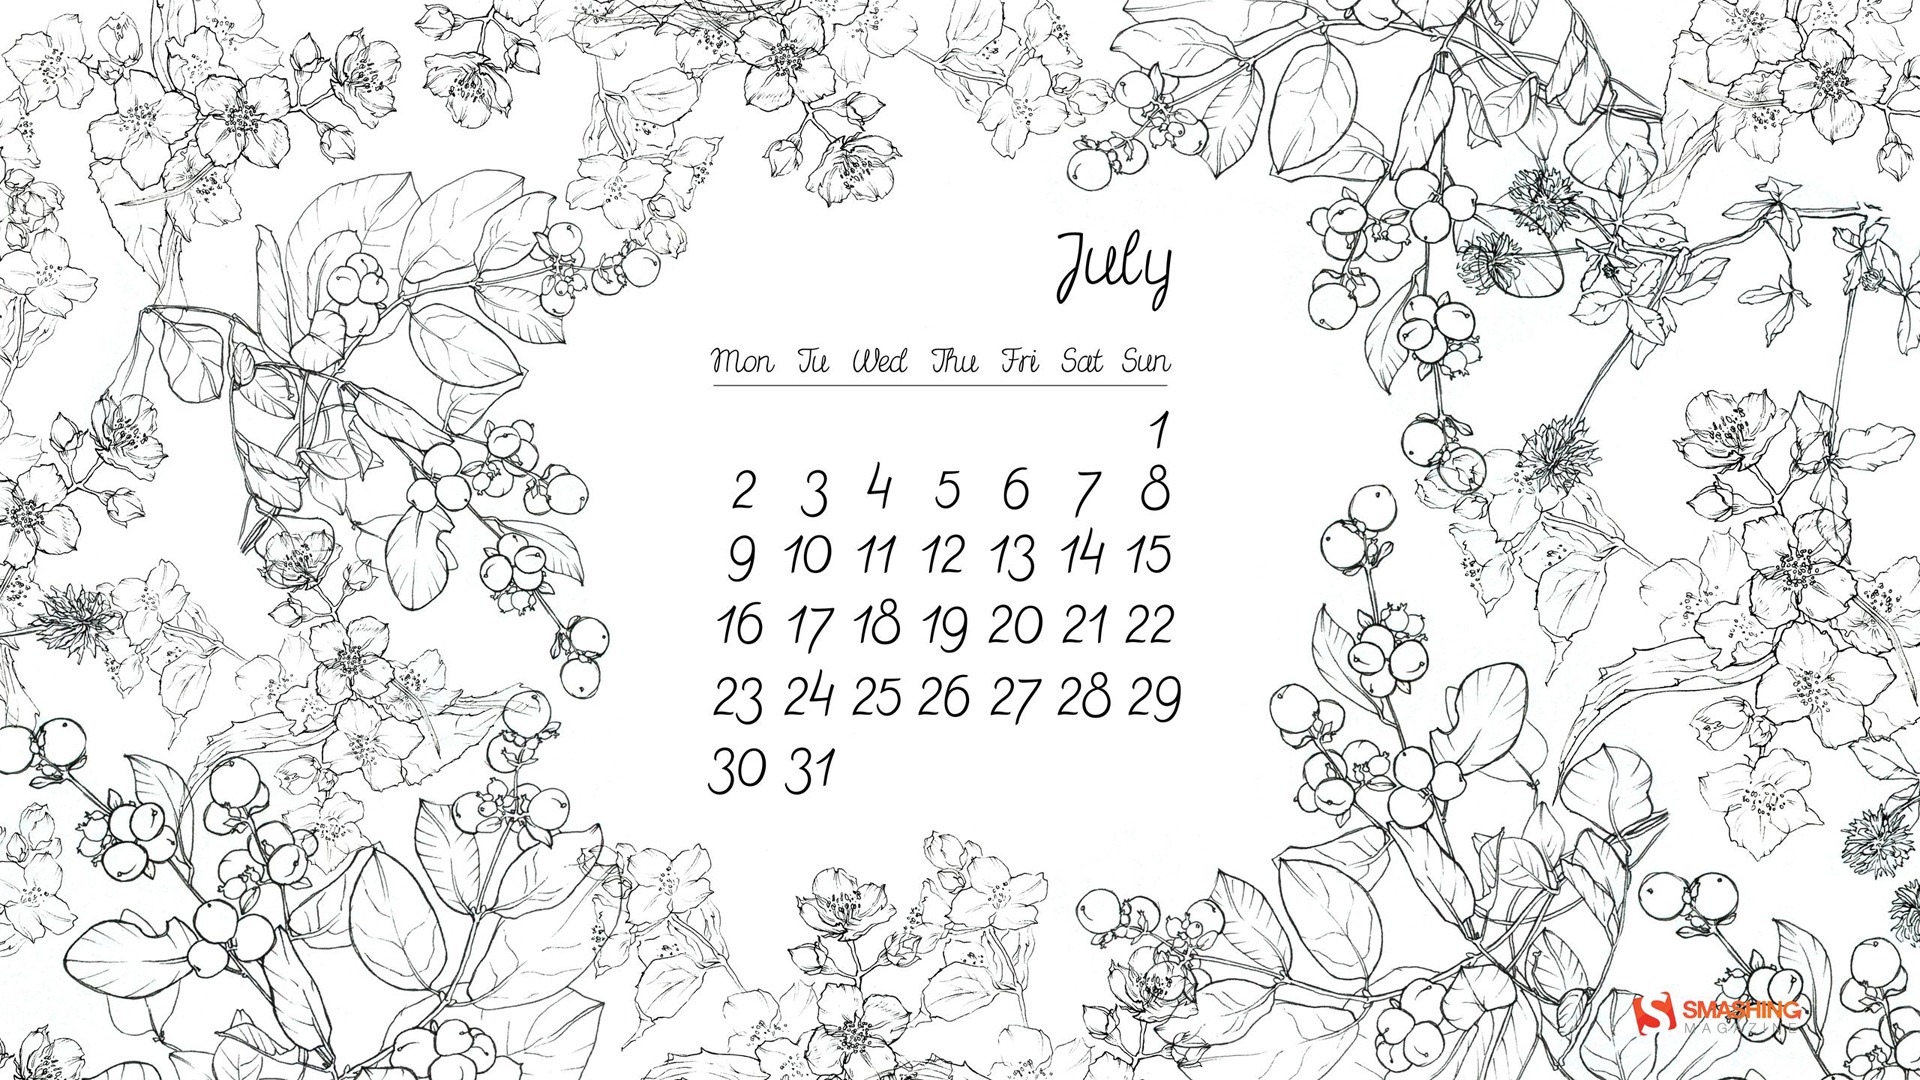 July 2012 Calendar wallpapers (1) #14 - 1920x1080